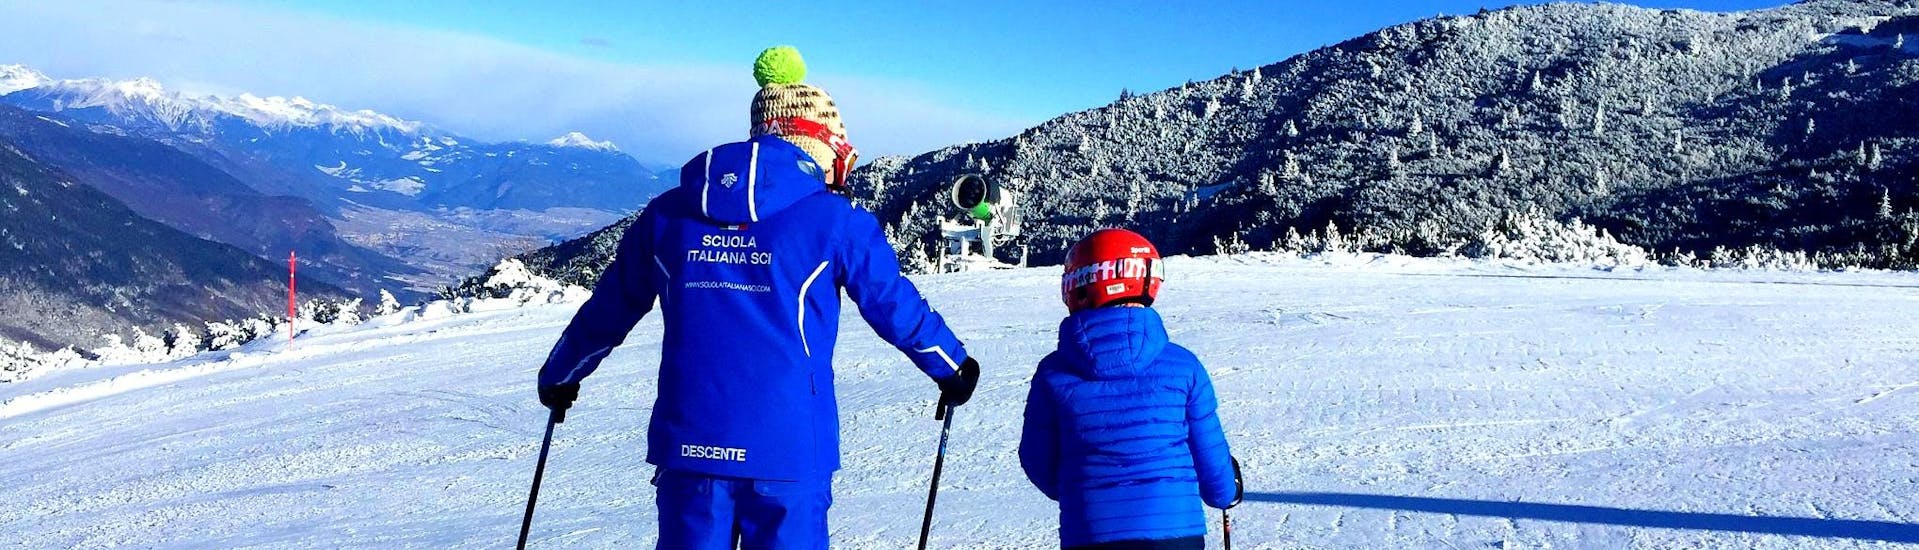 Skileraar legt de techniek uit aan een kind in Andalo tijdens een van de privé skilessen voor kinderen van alle niveaus.